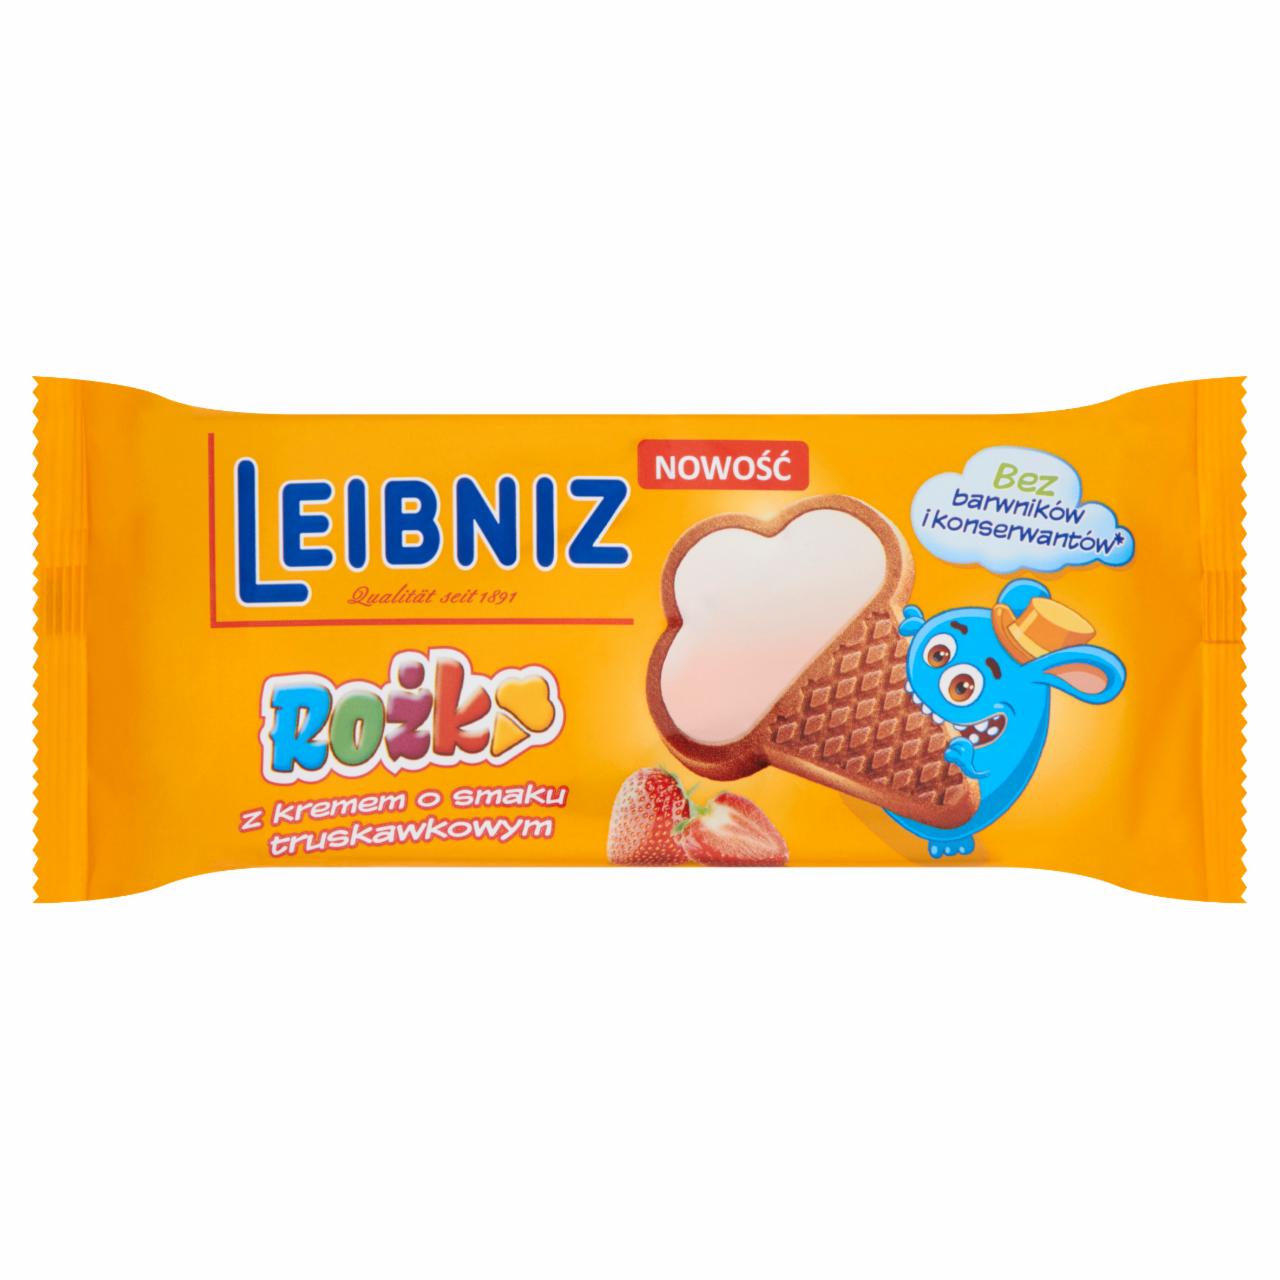 Zdjęcia - Leibniz Rożki z kremem o smaku truskawkowym 100 g